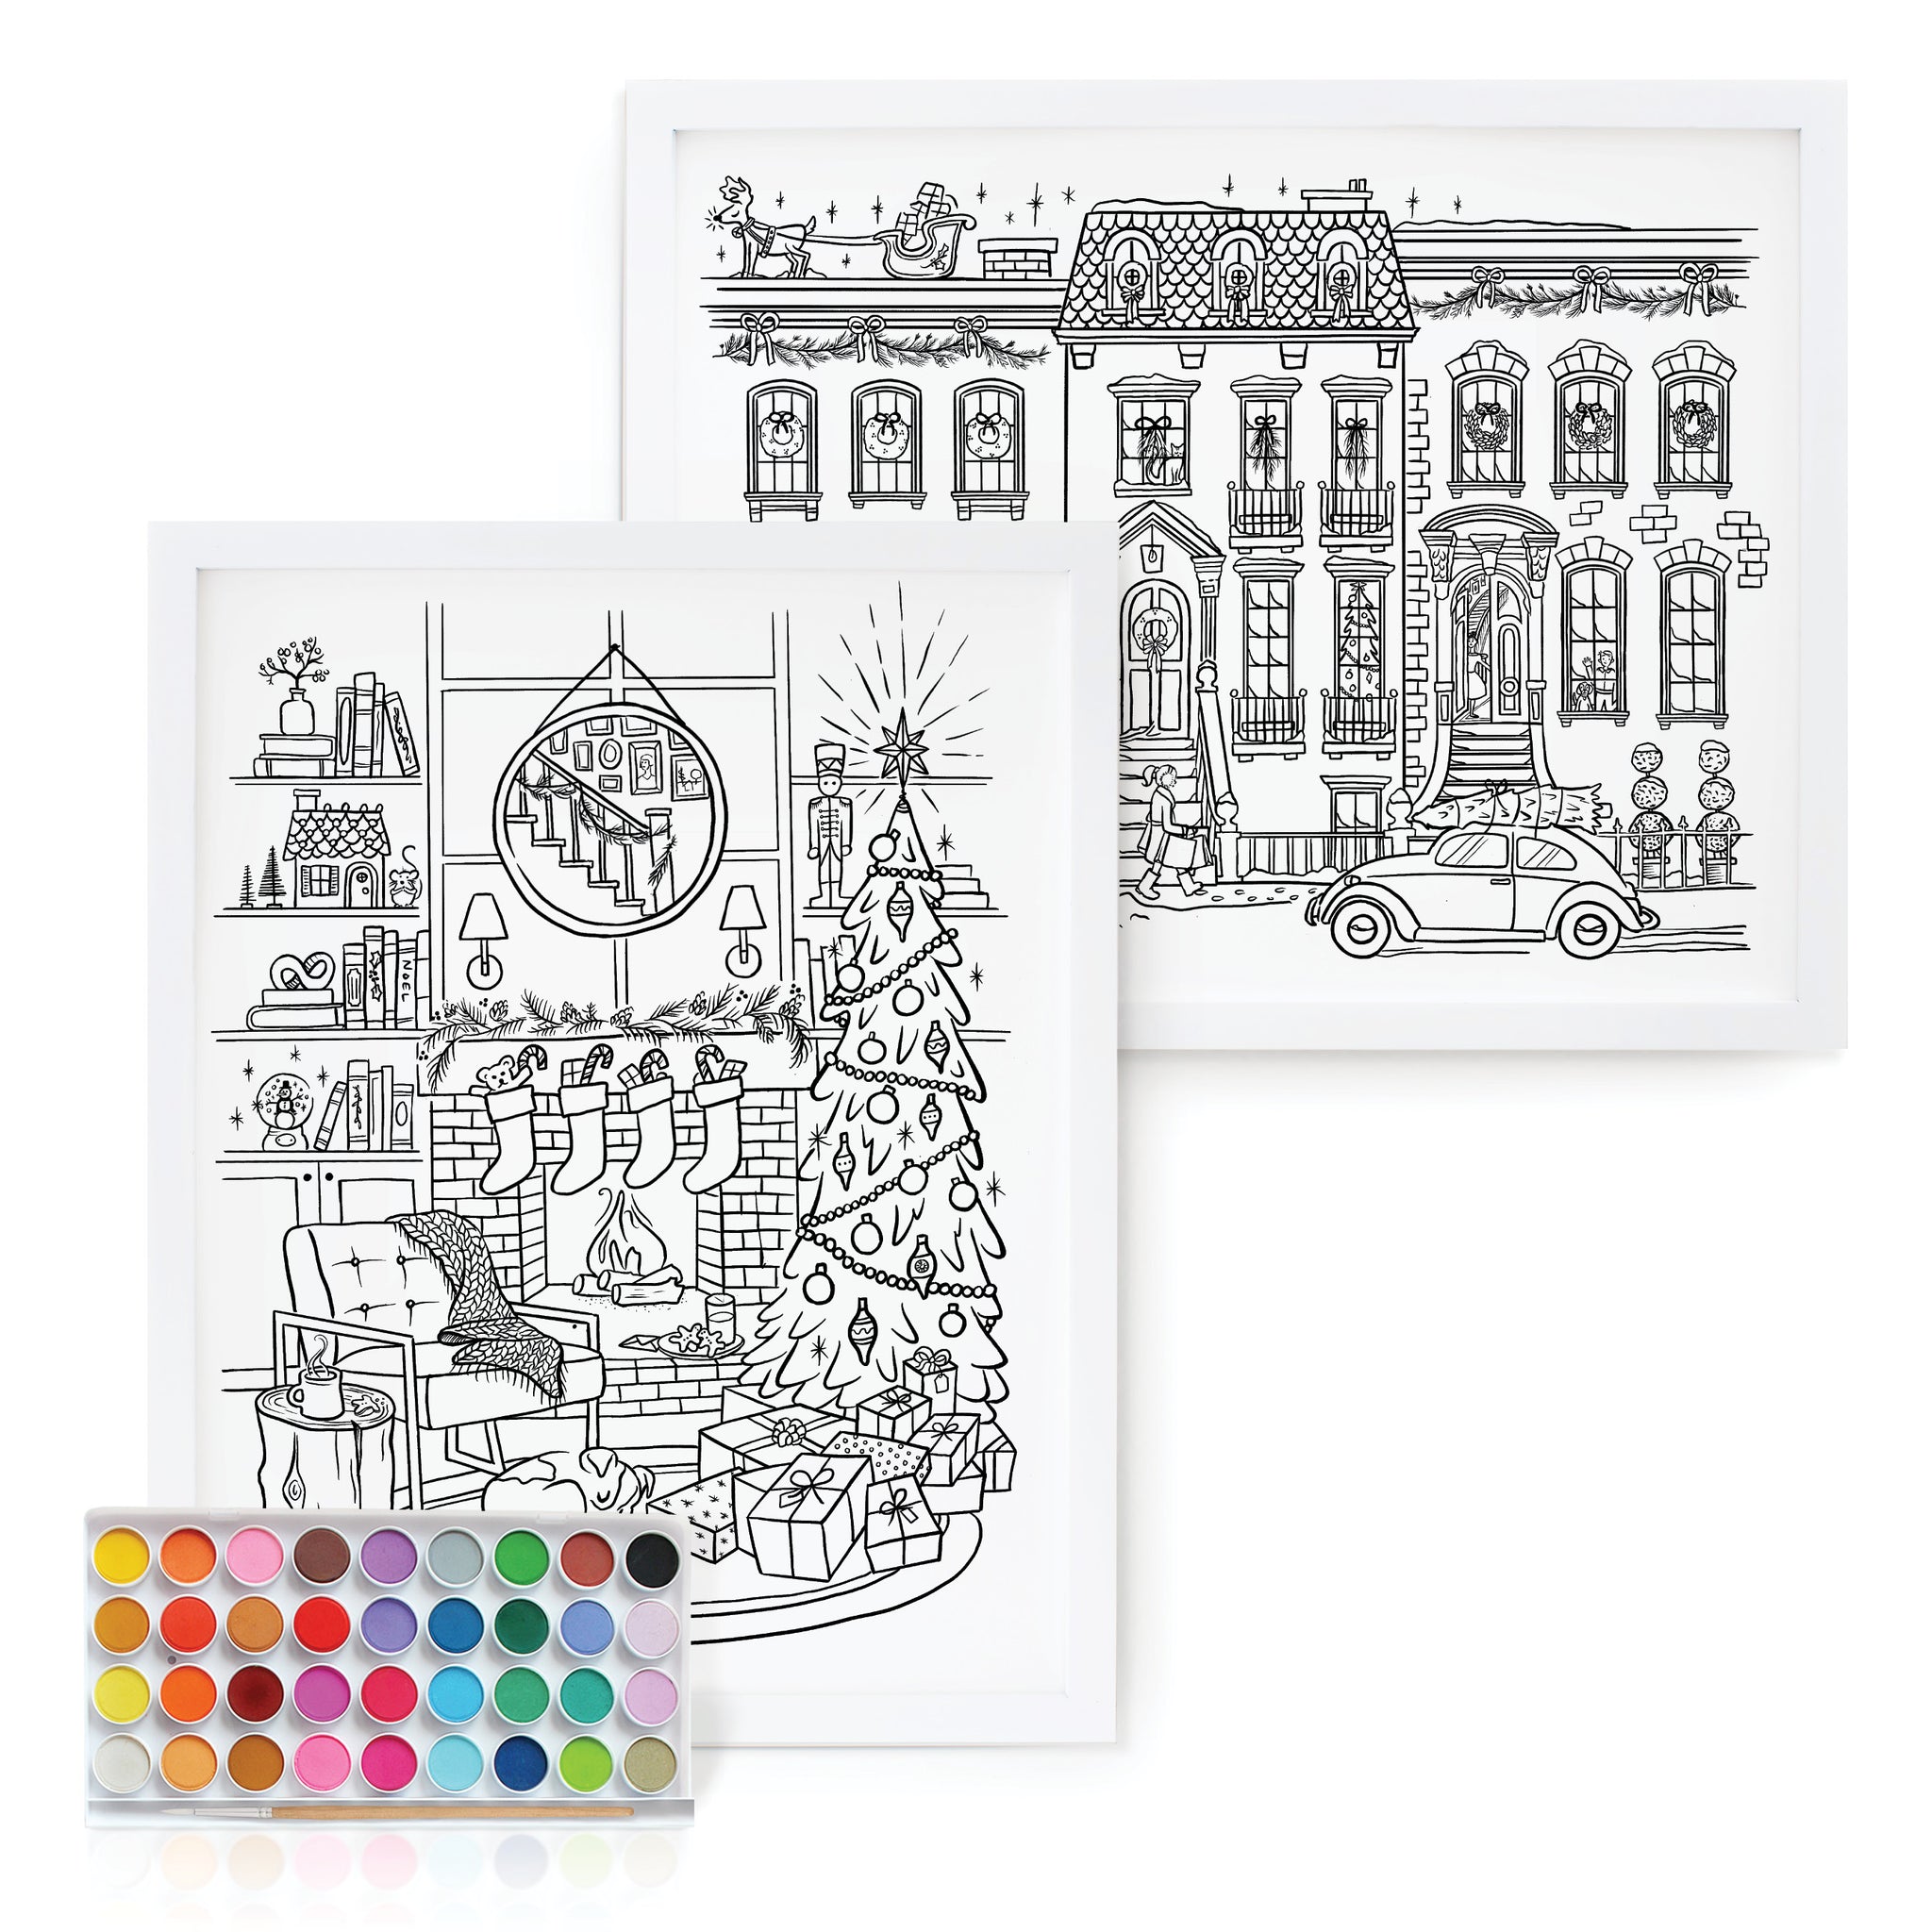 Paintable Art Print - Kids – Inklings Paperie